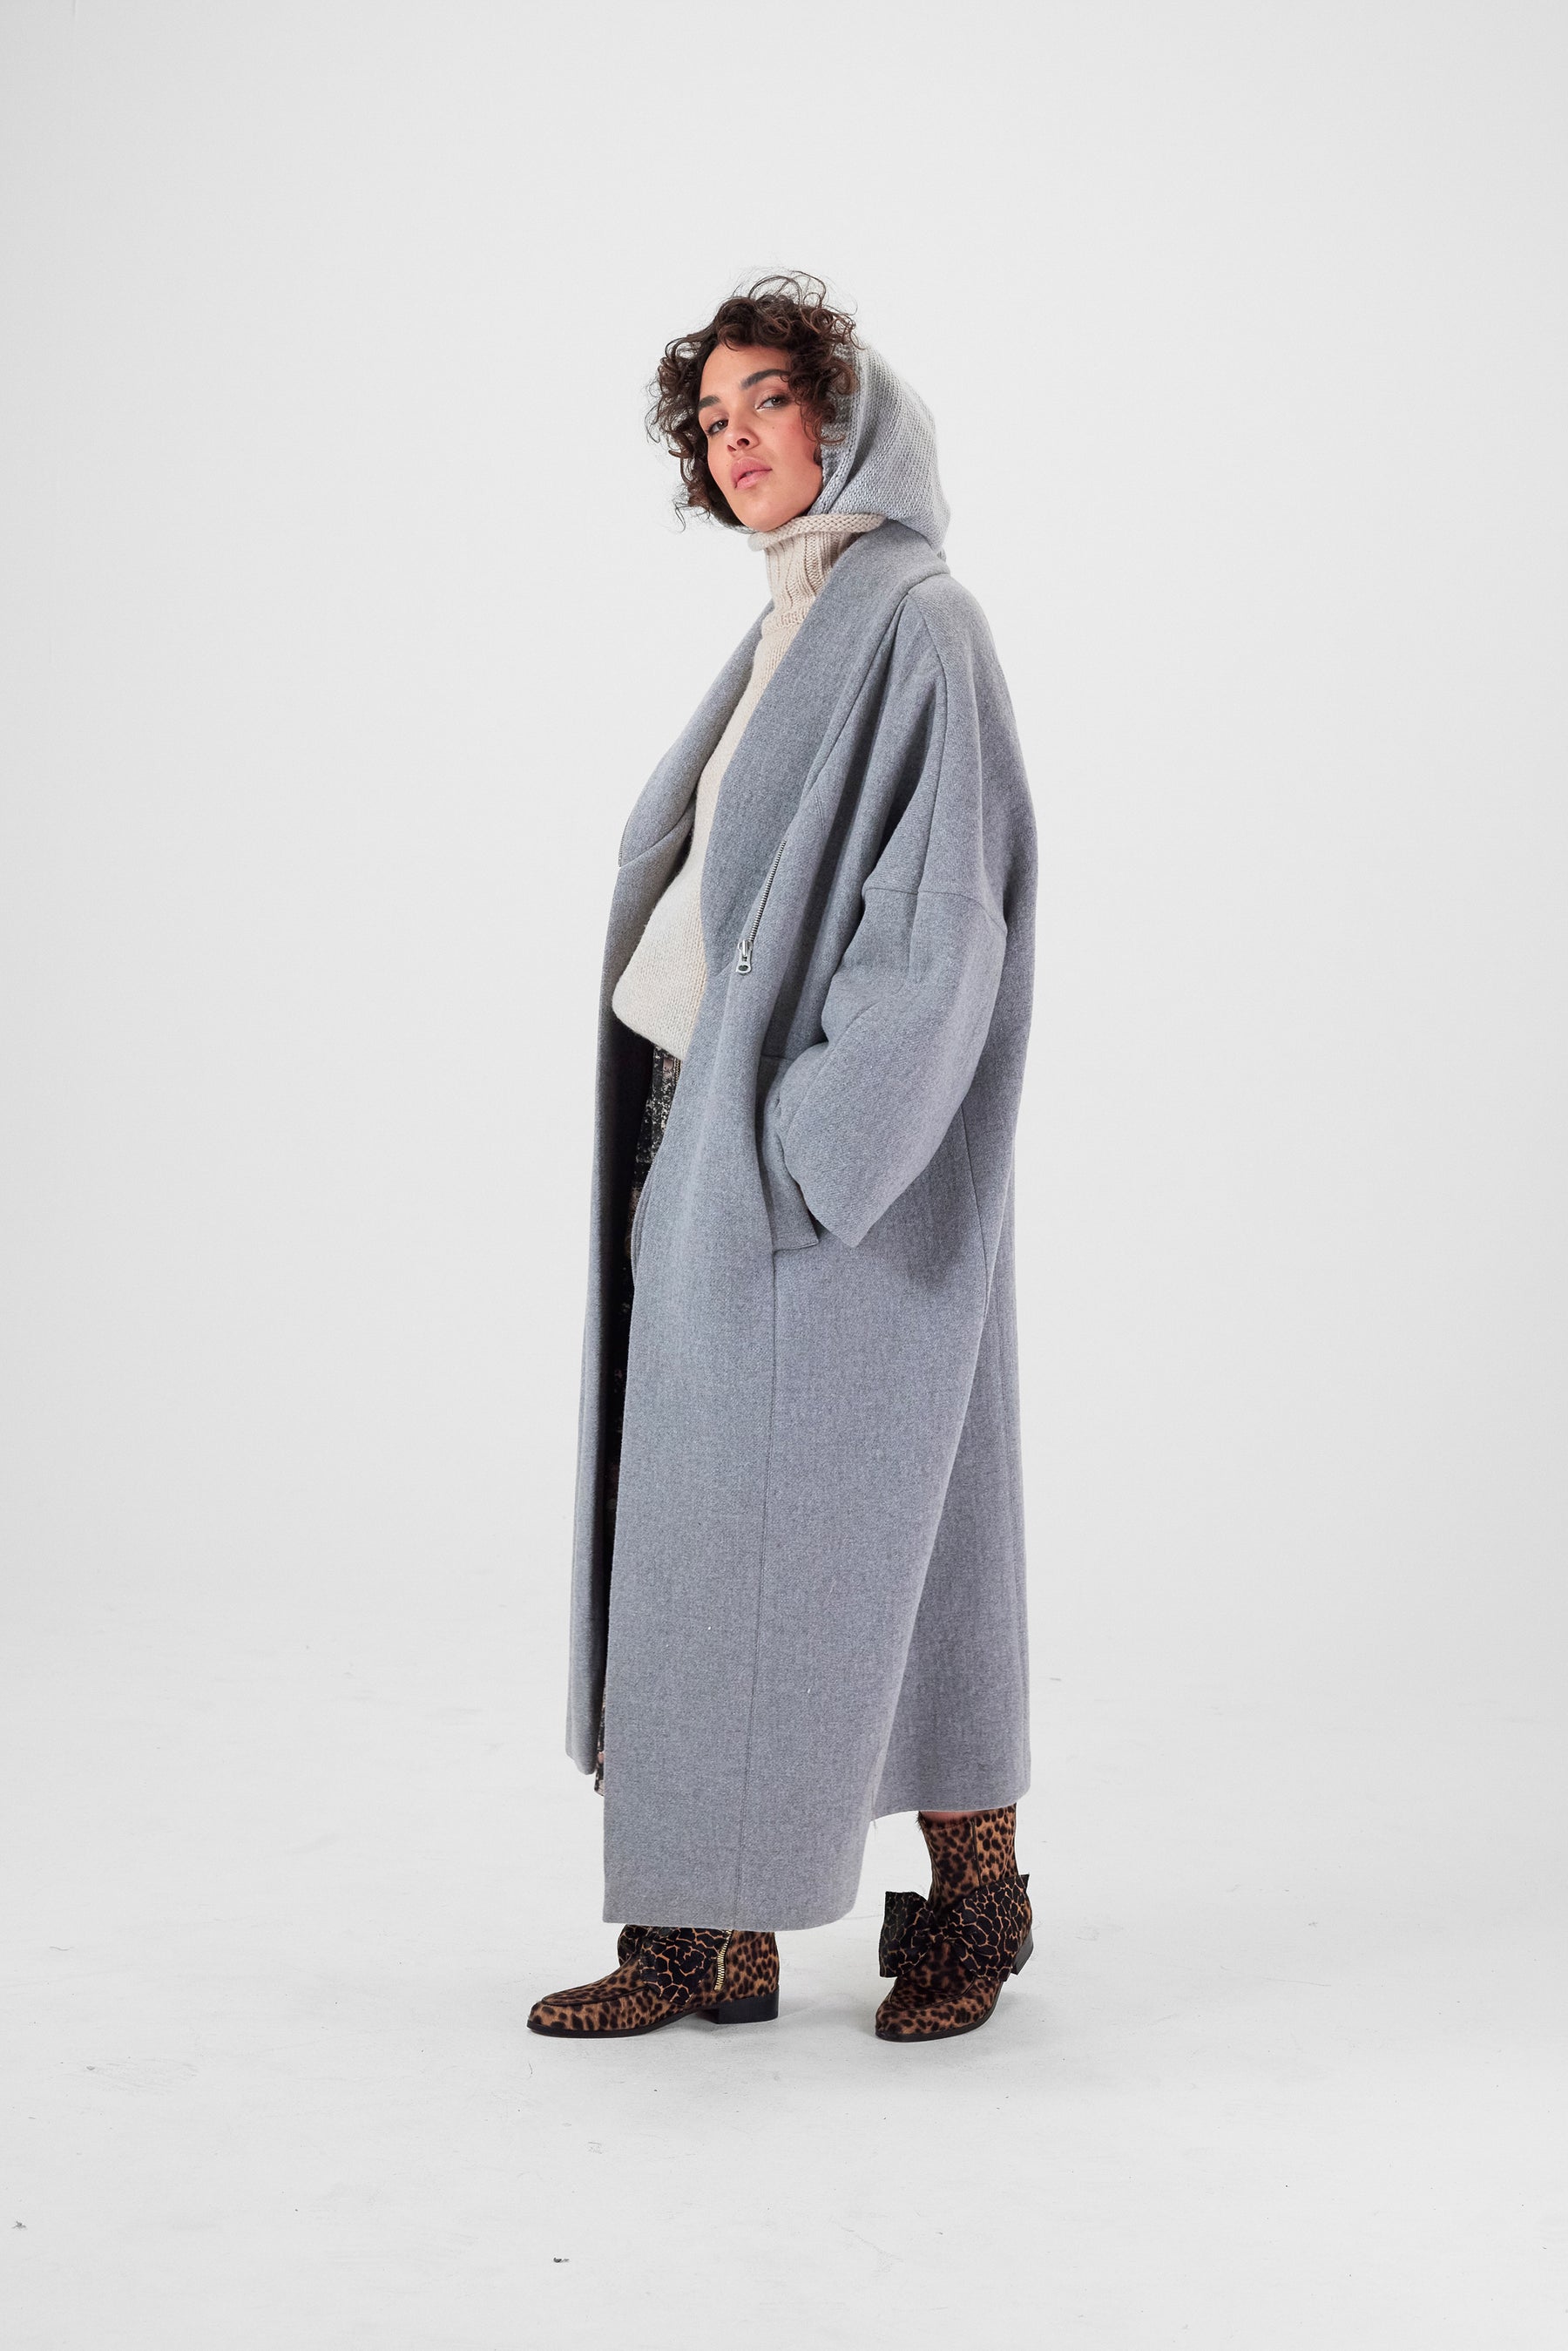 Eren coat in Lead woolen cashmere